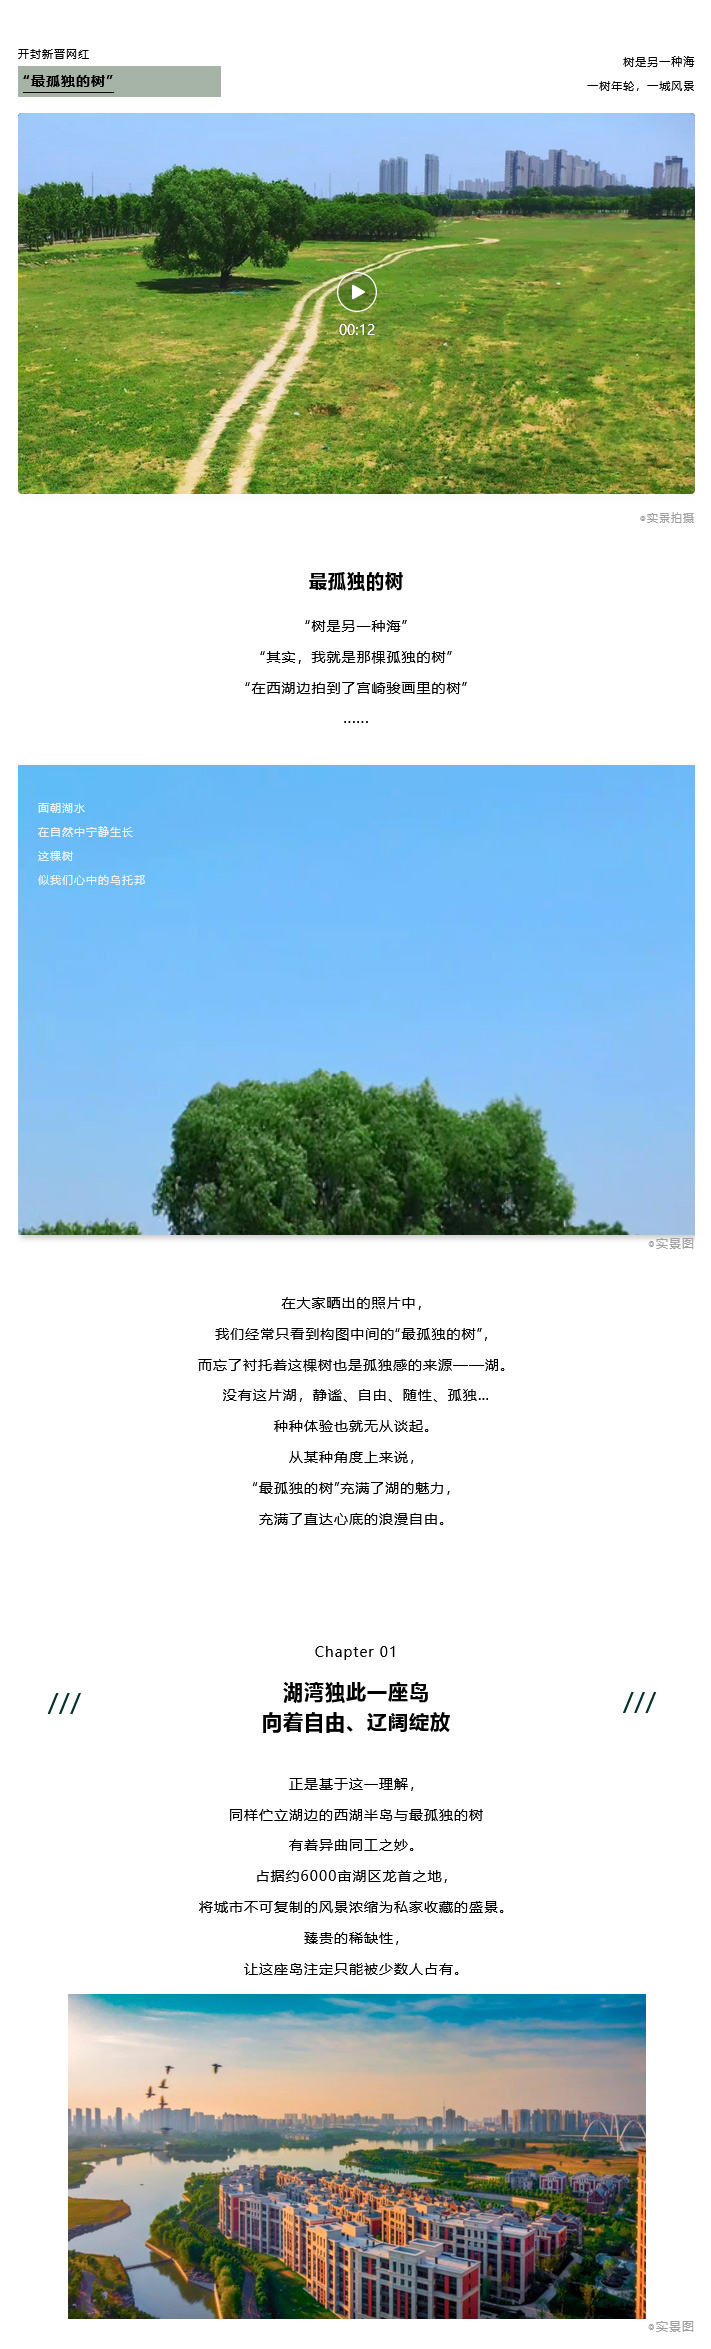 枫华西湖半岛开封网红孤独树